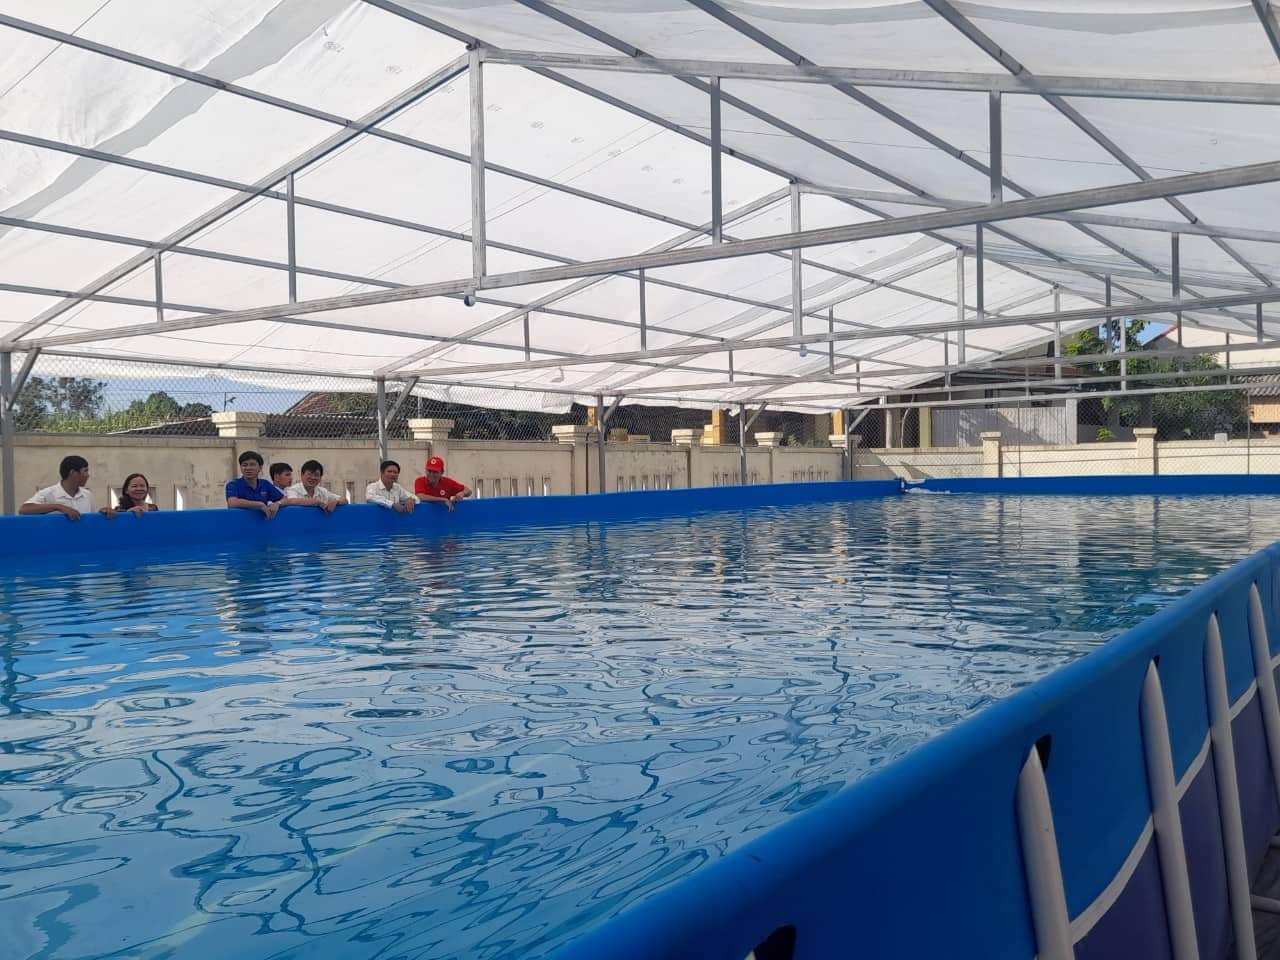 Bể bơi di động do Hội từ thiện Vinaconex và những người bạn ở Hà Nội hỗ trợ xây dựng.